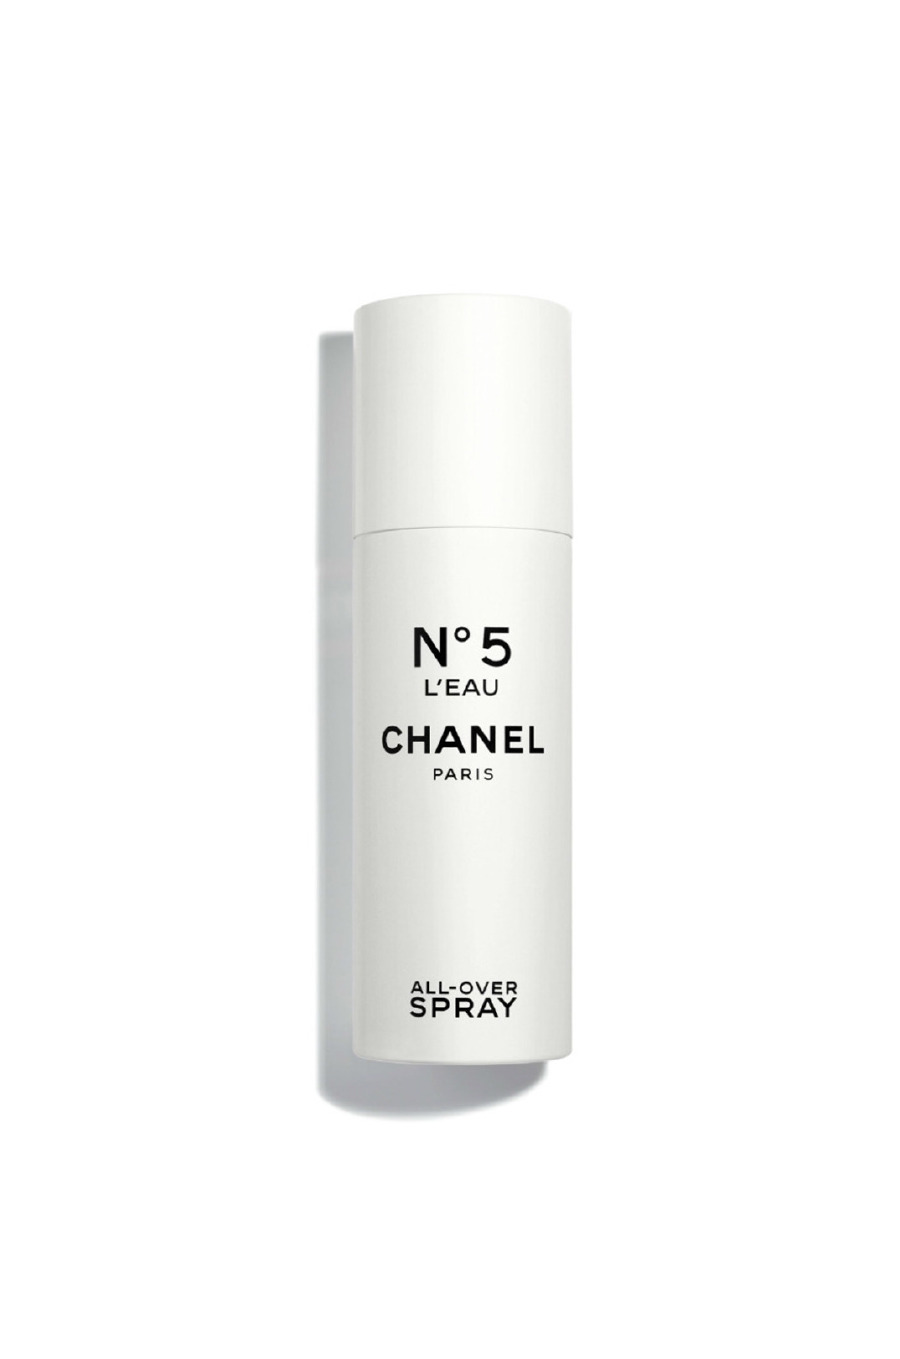 Chanel N°5 L'Eau All-Over Spray